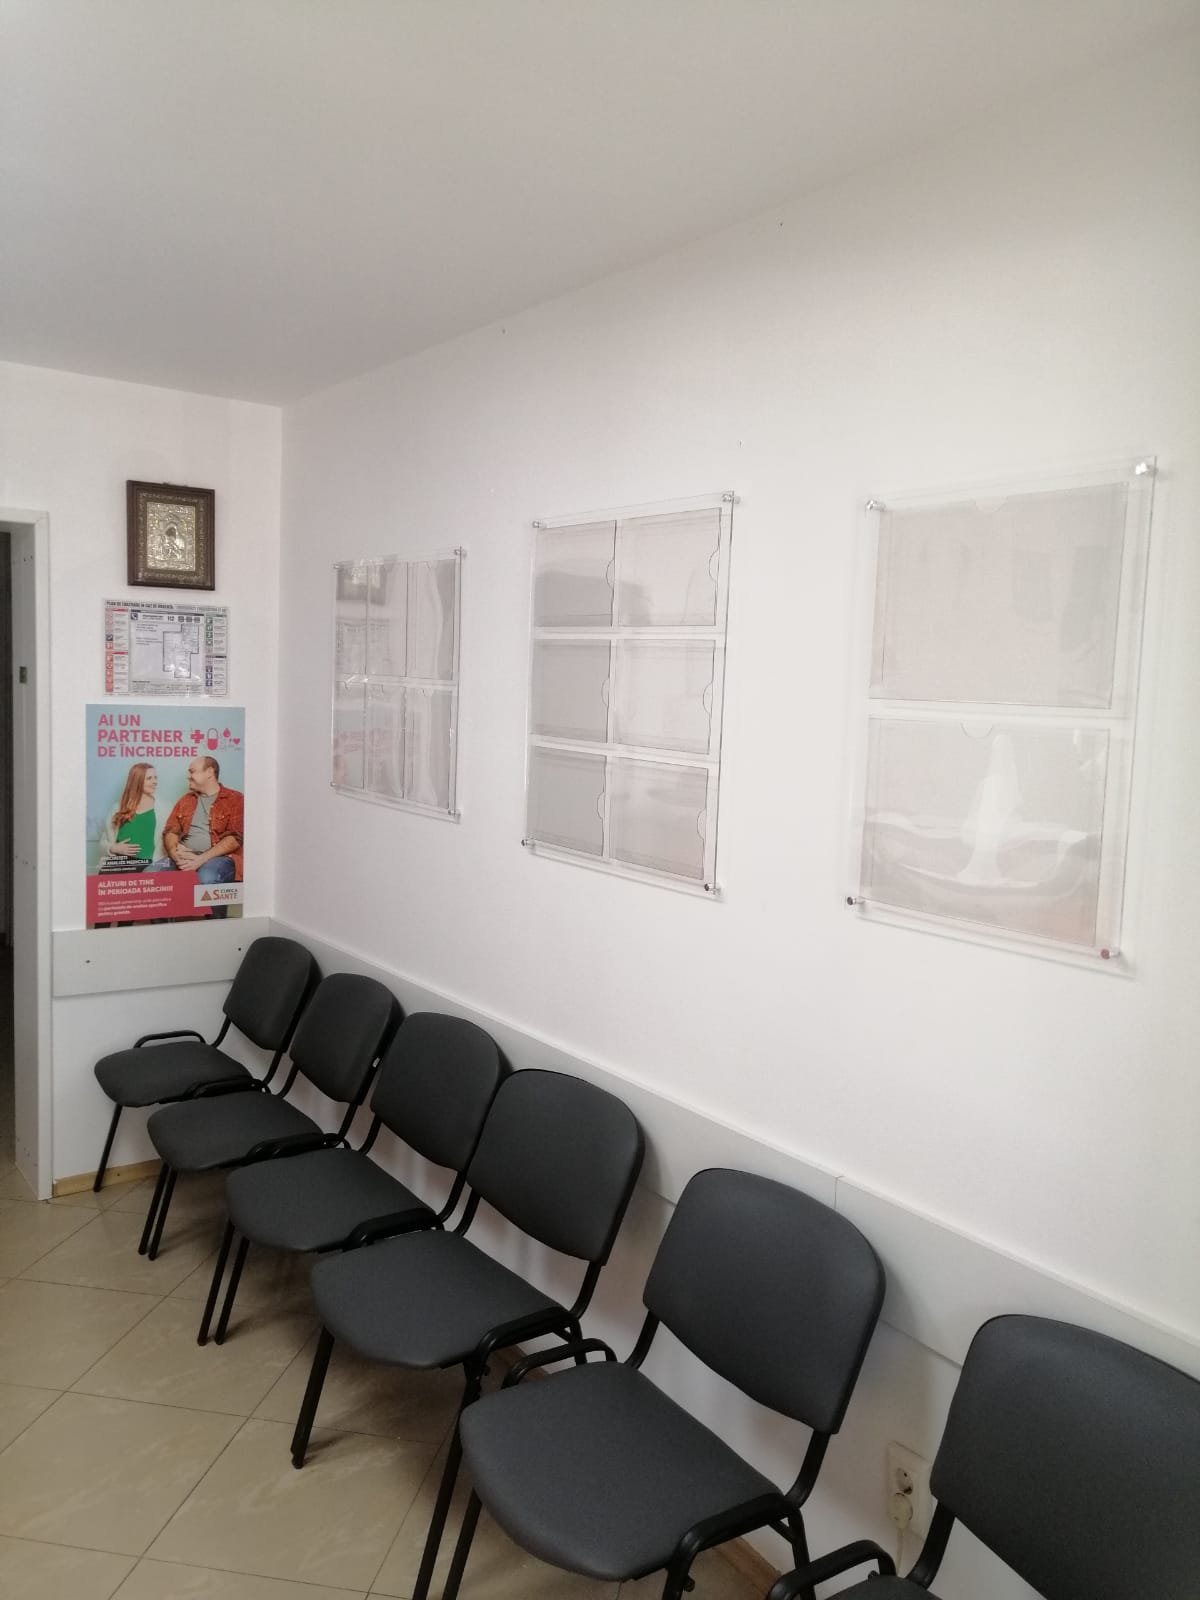 Photo of Clinica Sante Craiova COVID Testing at Bulevardul 1 Mai, Craiova, Romania